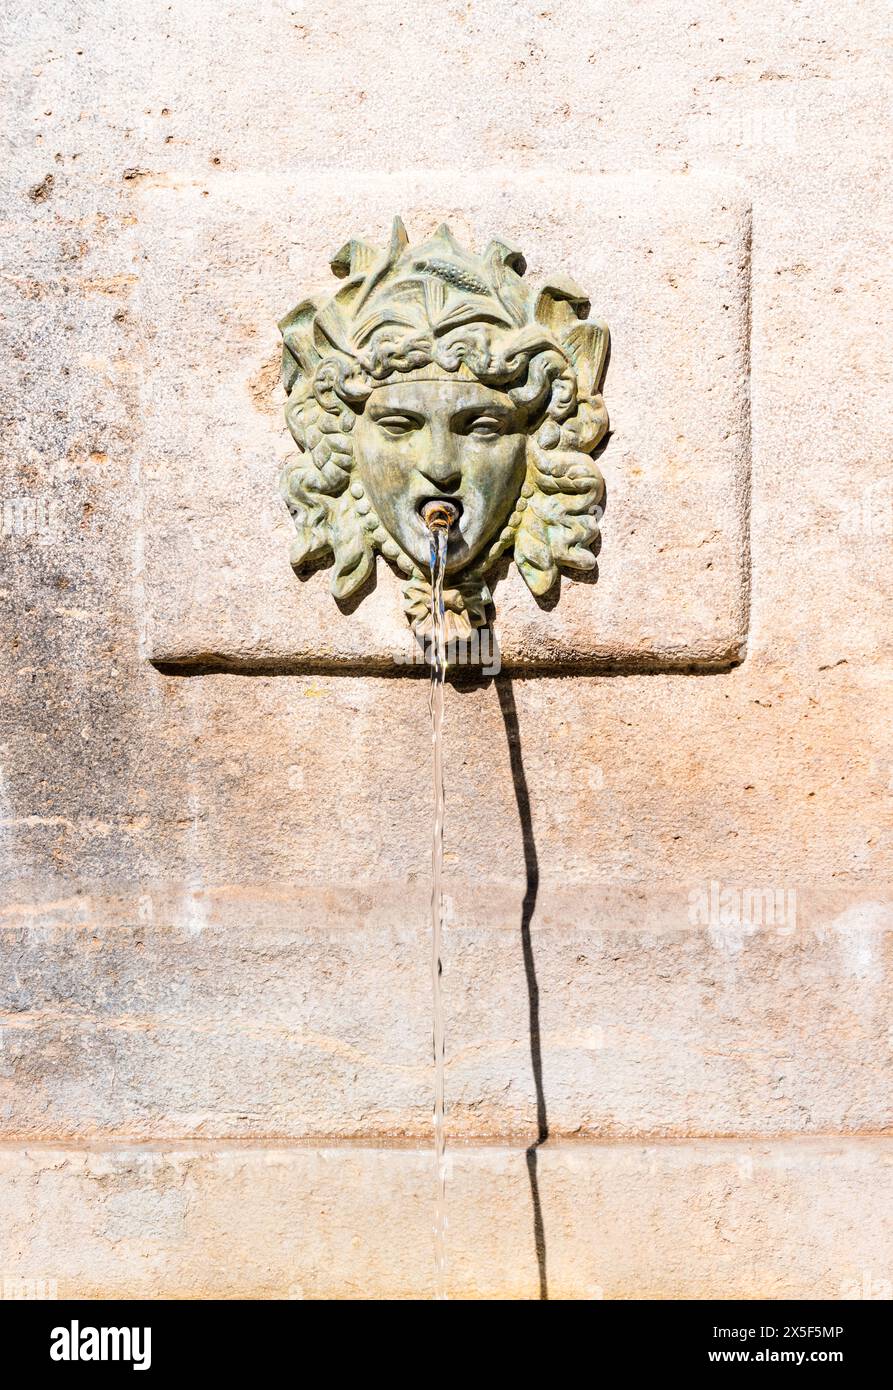 Ancienne fontaine publique dans la vieille ville de Valence, Espagne Banque D'Images